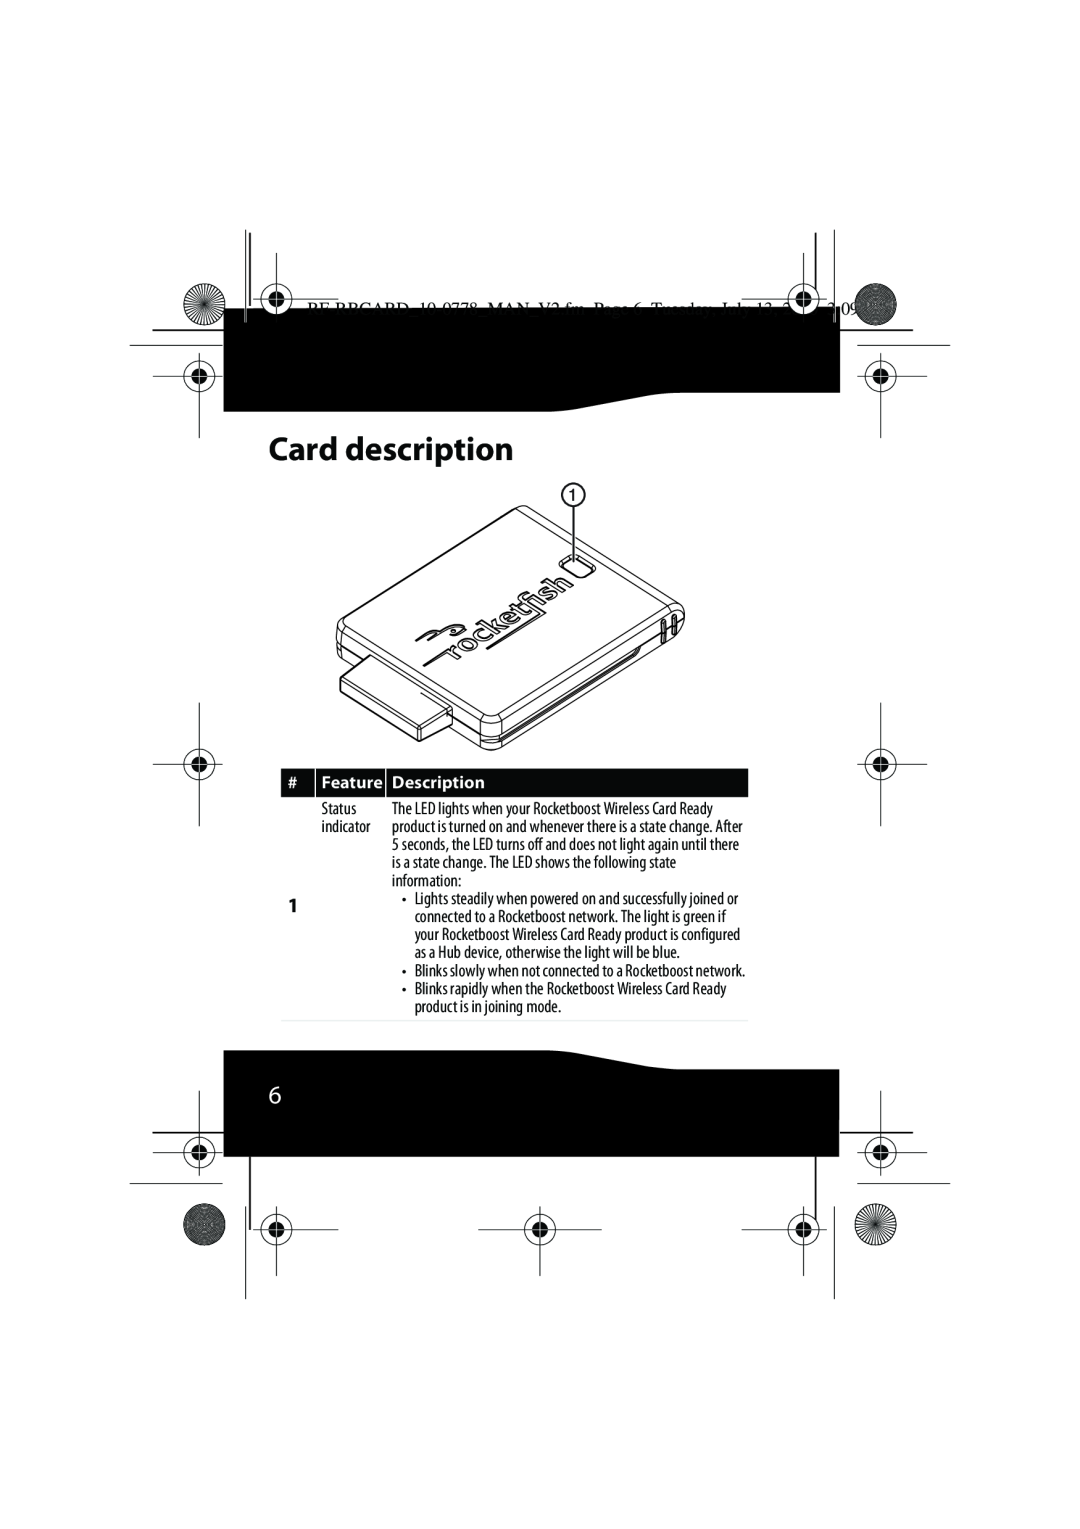 RocketFish manual Card description, RF-RBCARD10-0778MANV2.fm Page 6 Tuesday, July 13, 2010 309 PM, Feature, Description 